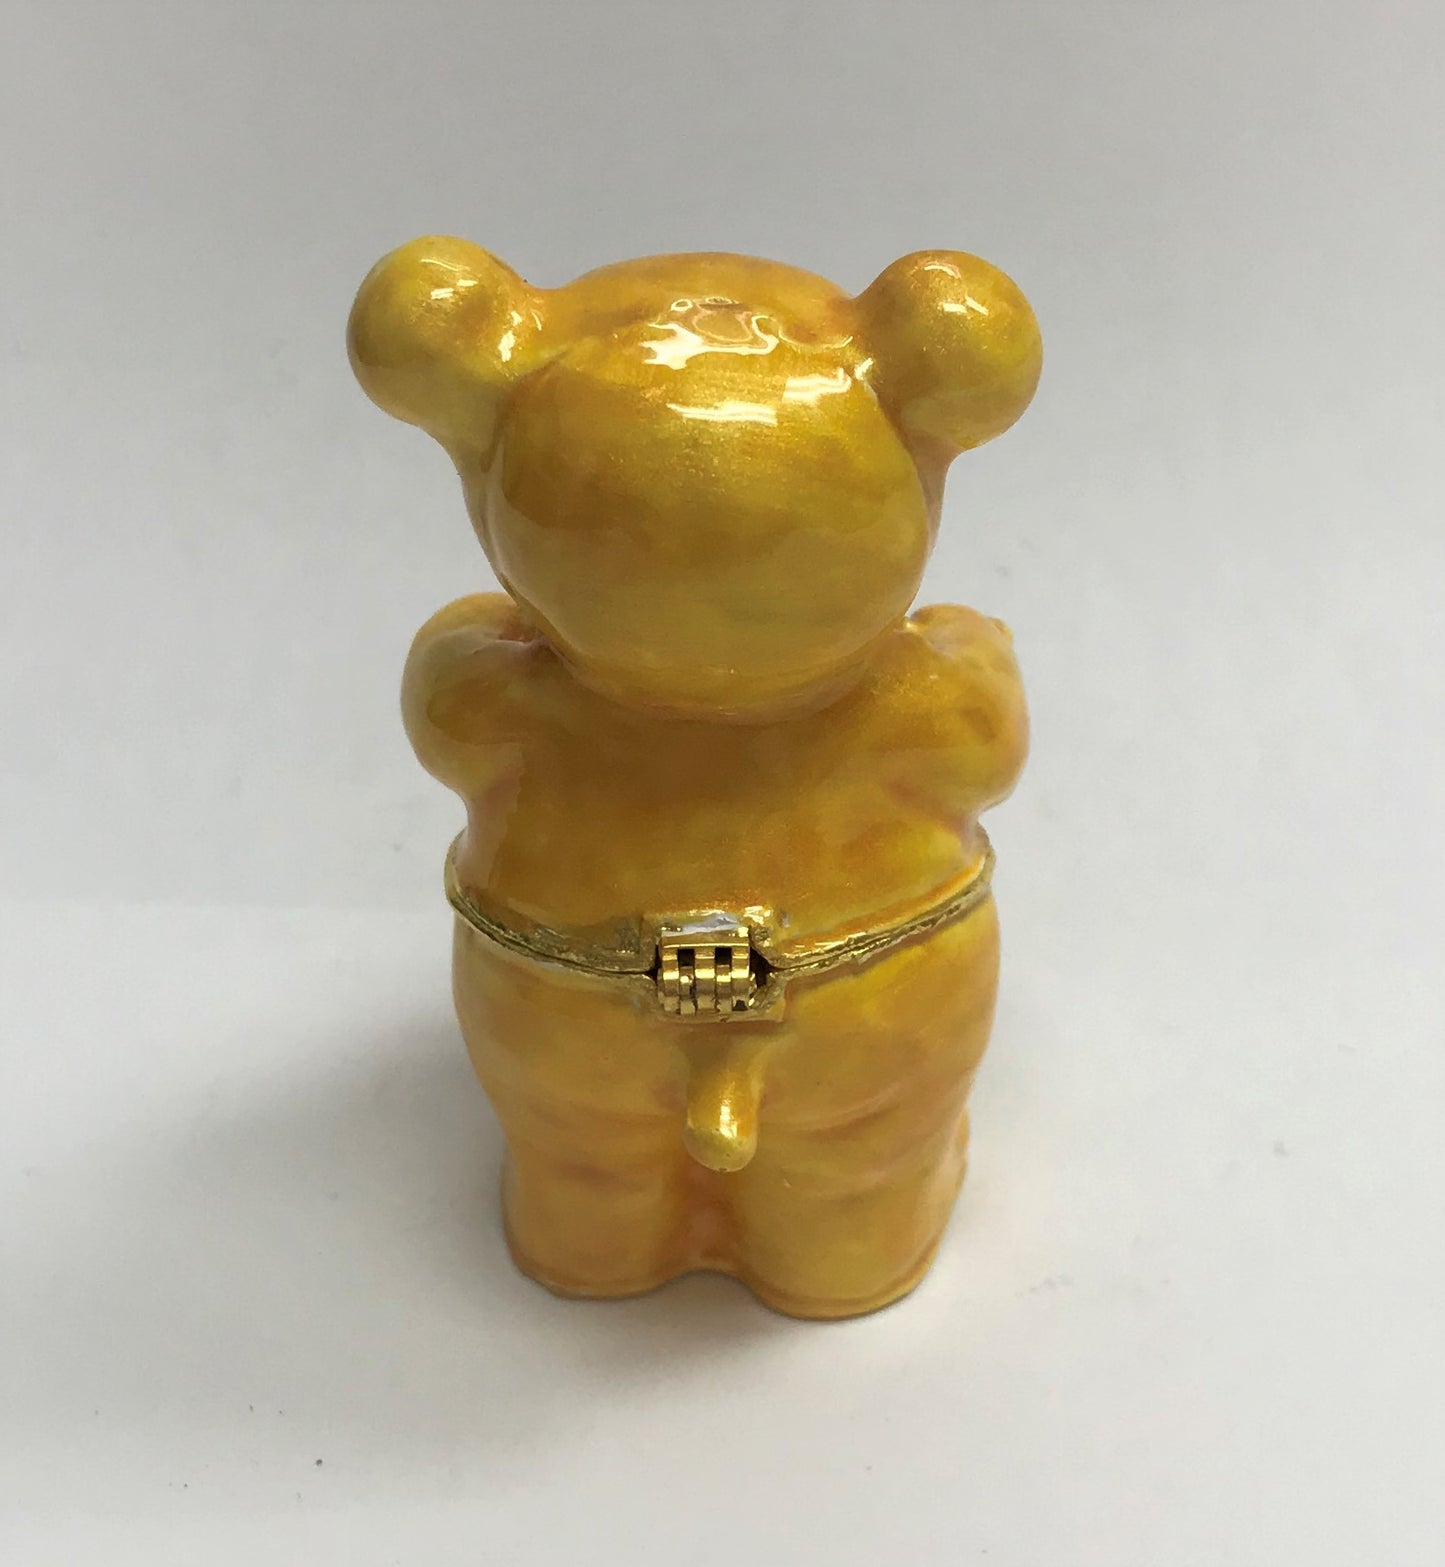 Cristiani Collezione Bear With Heart Trinket Box.